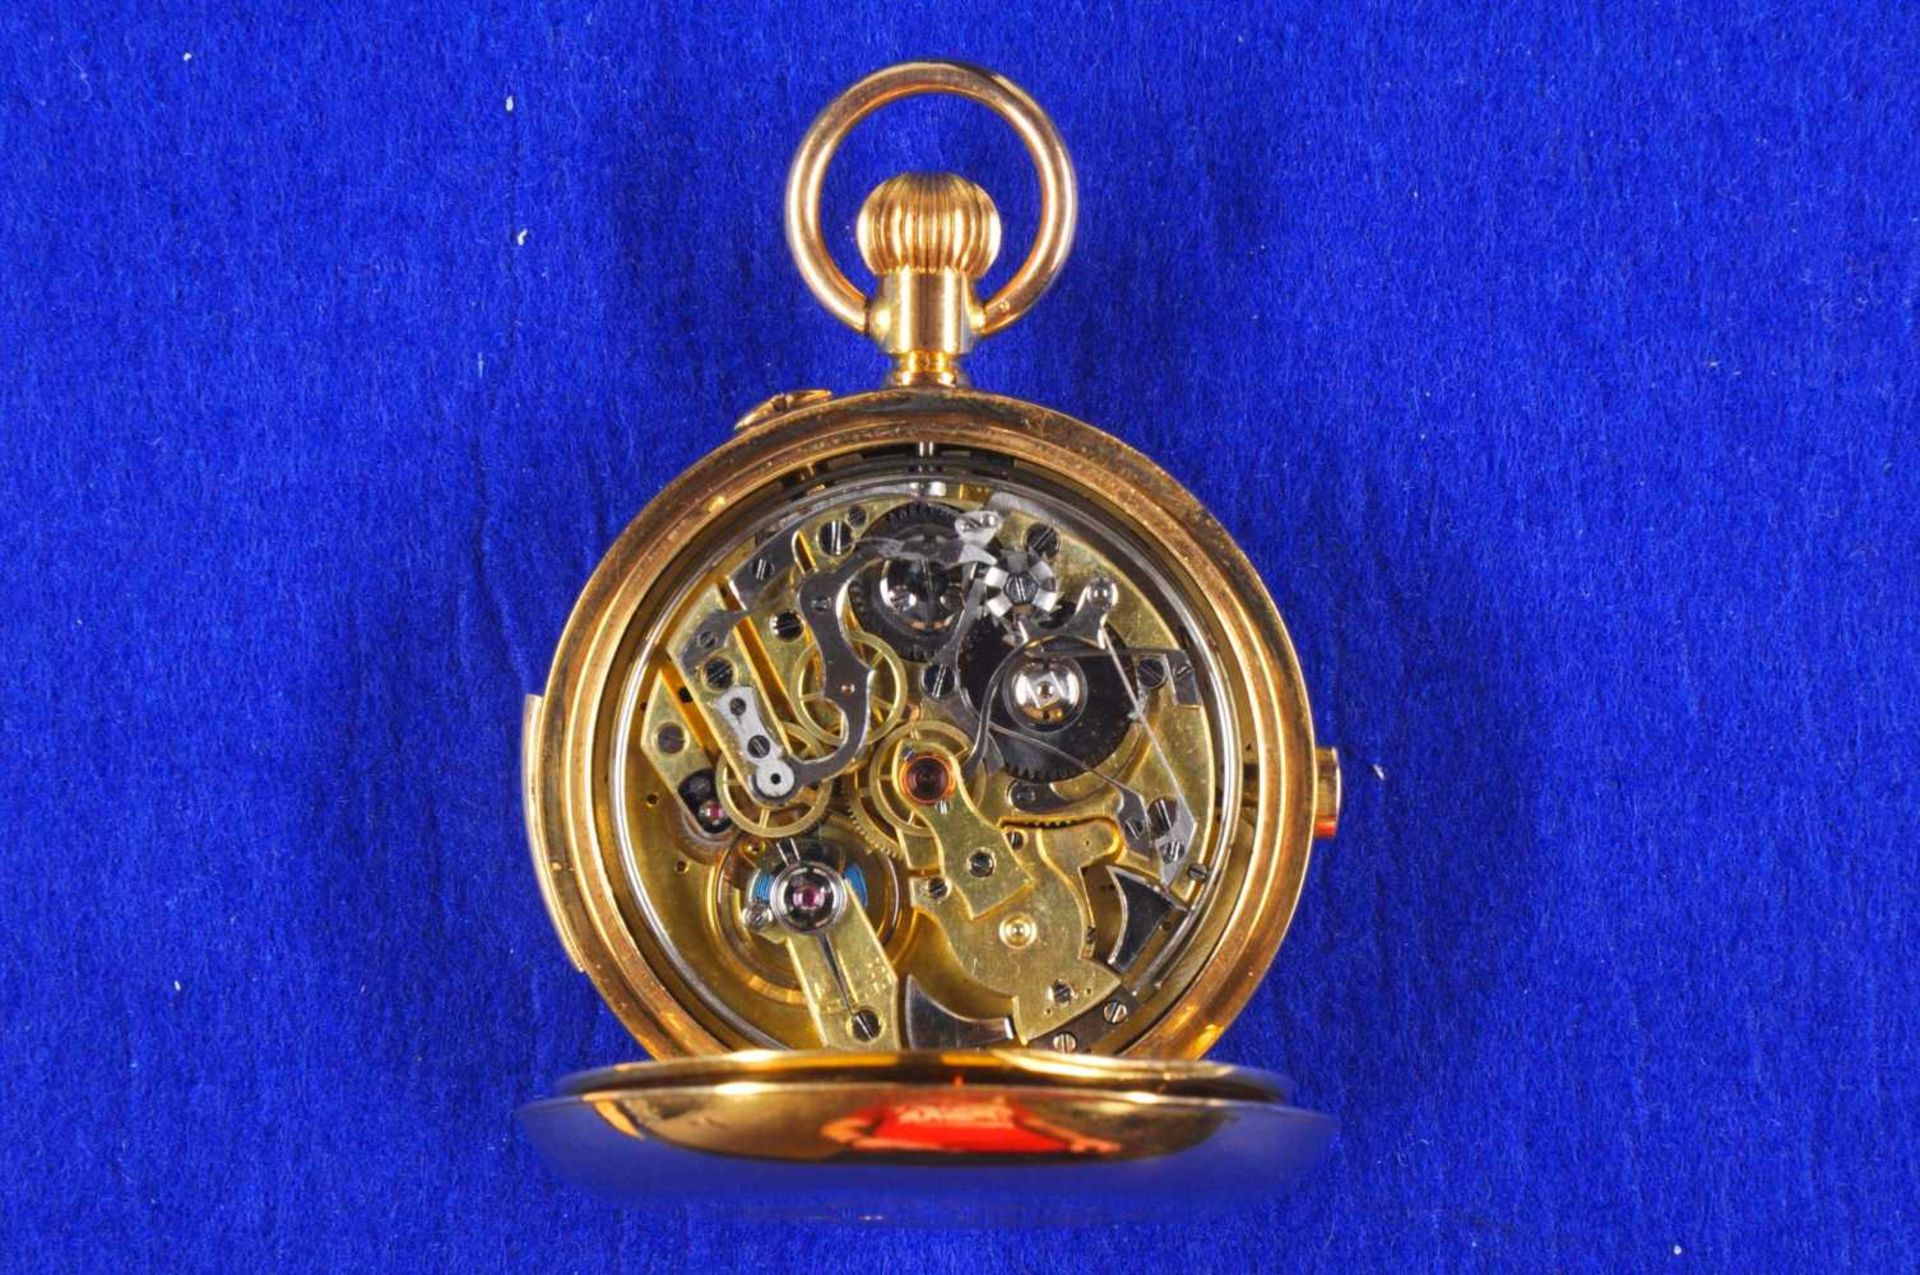 Grand Complication Chronograph Taschenuhr von etwa 1880. Ca. 55mm, 750er Rotgold, Handaufzug. Emaill - Bild 3 aus 4